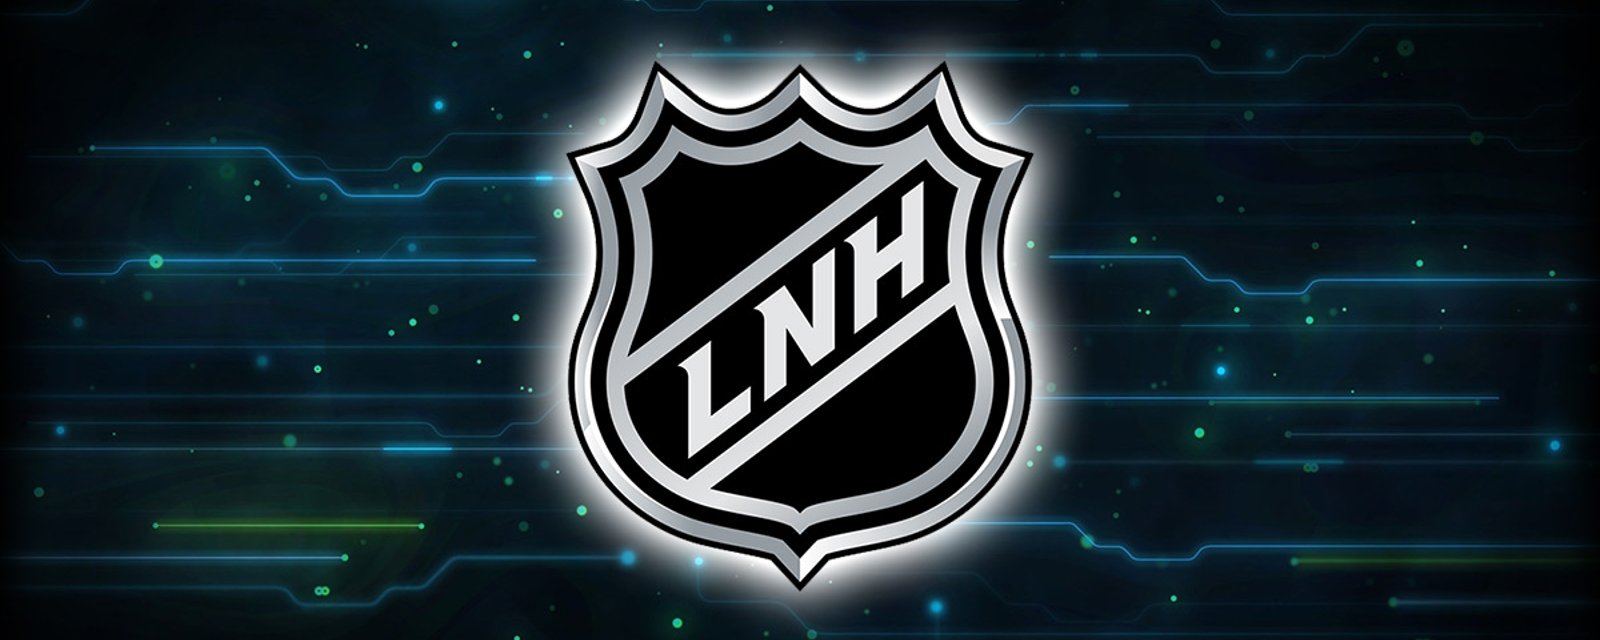 Une équipe de la LNH aurait contacté ses joueurs pour une date de retour